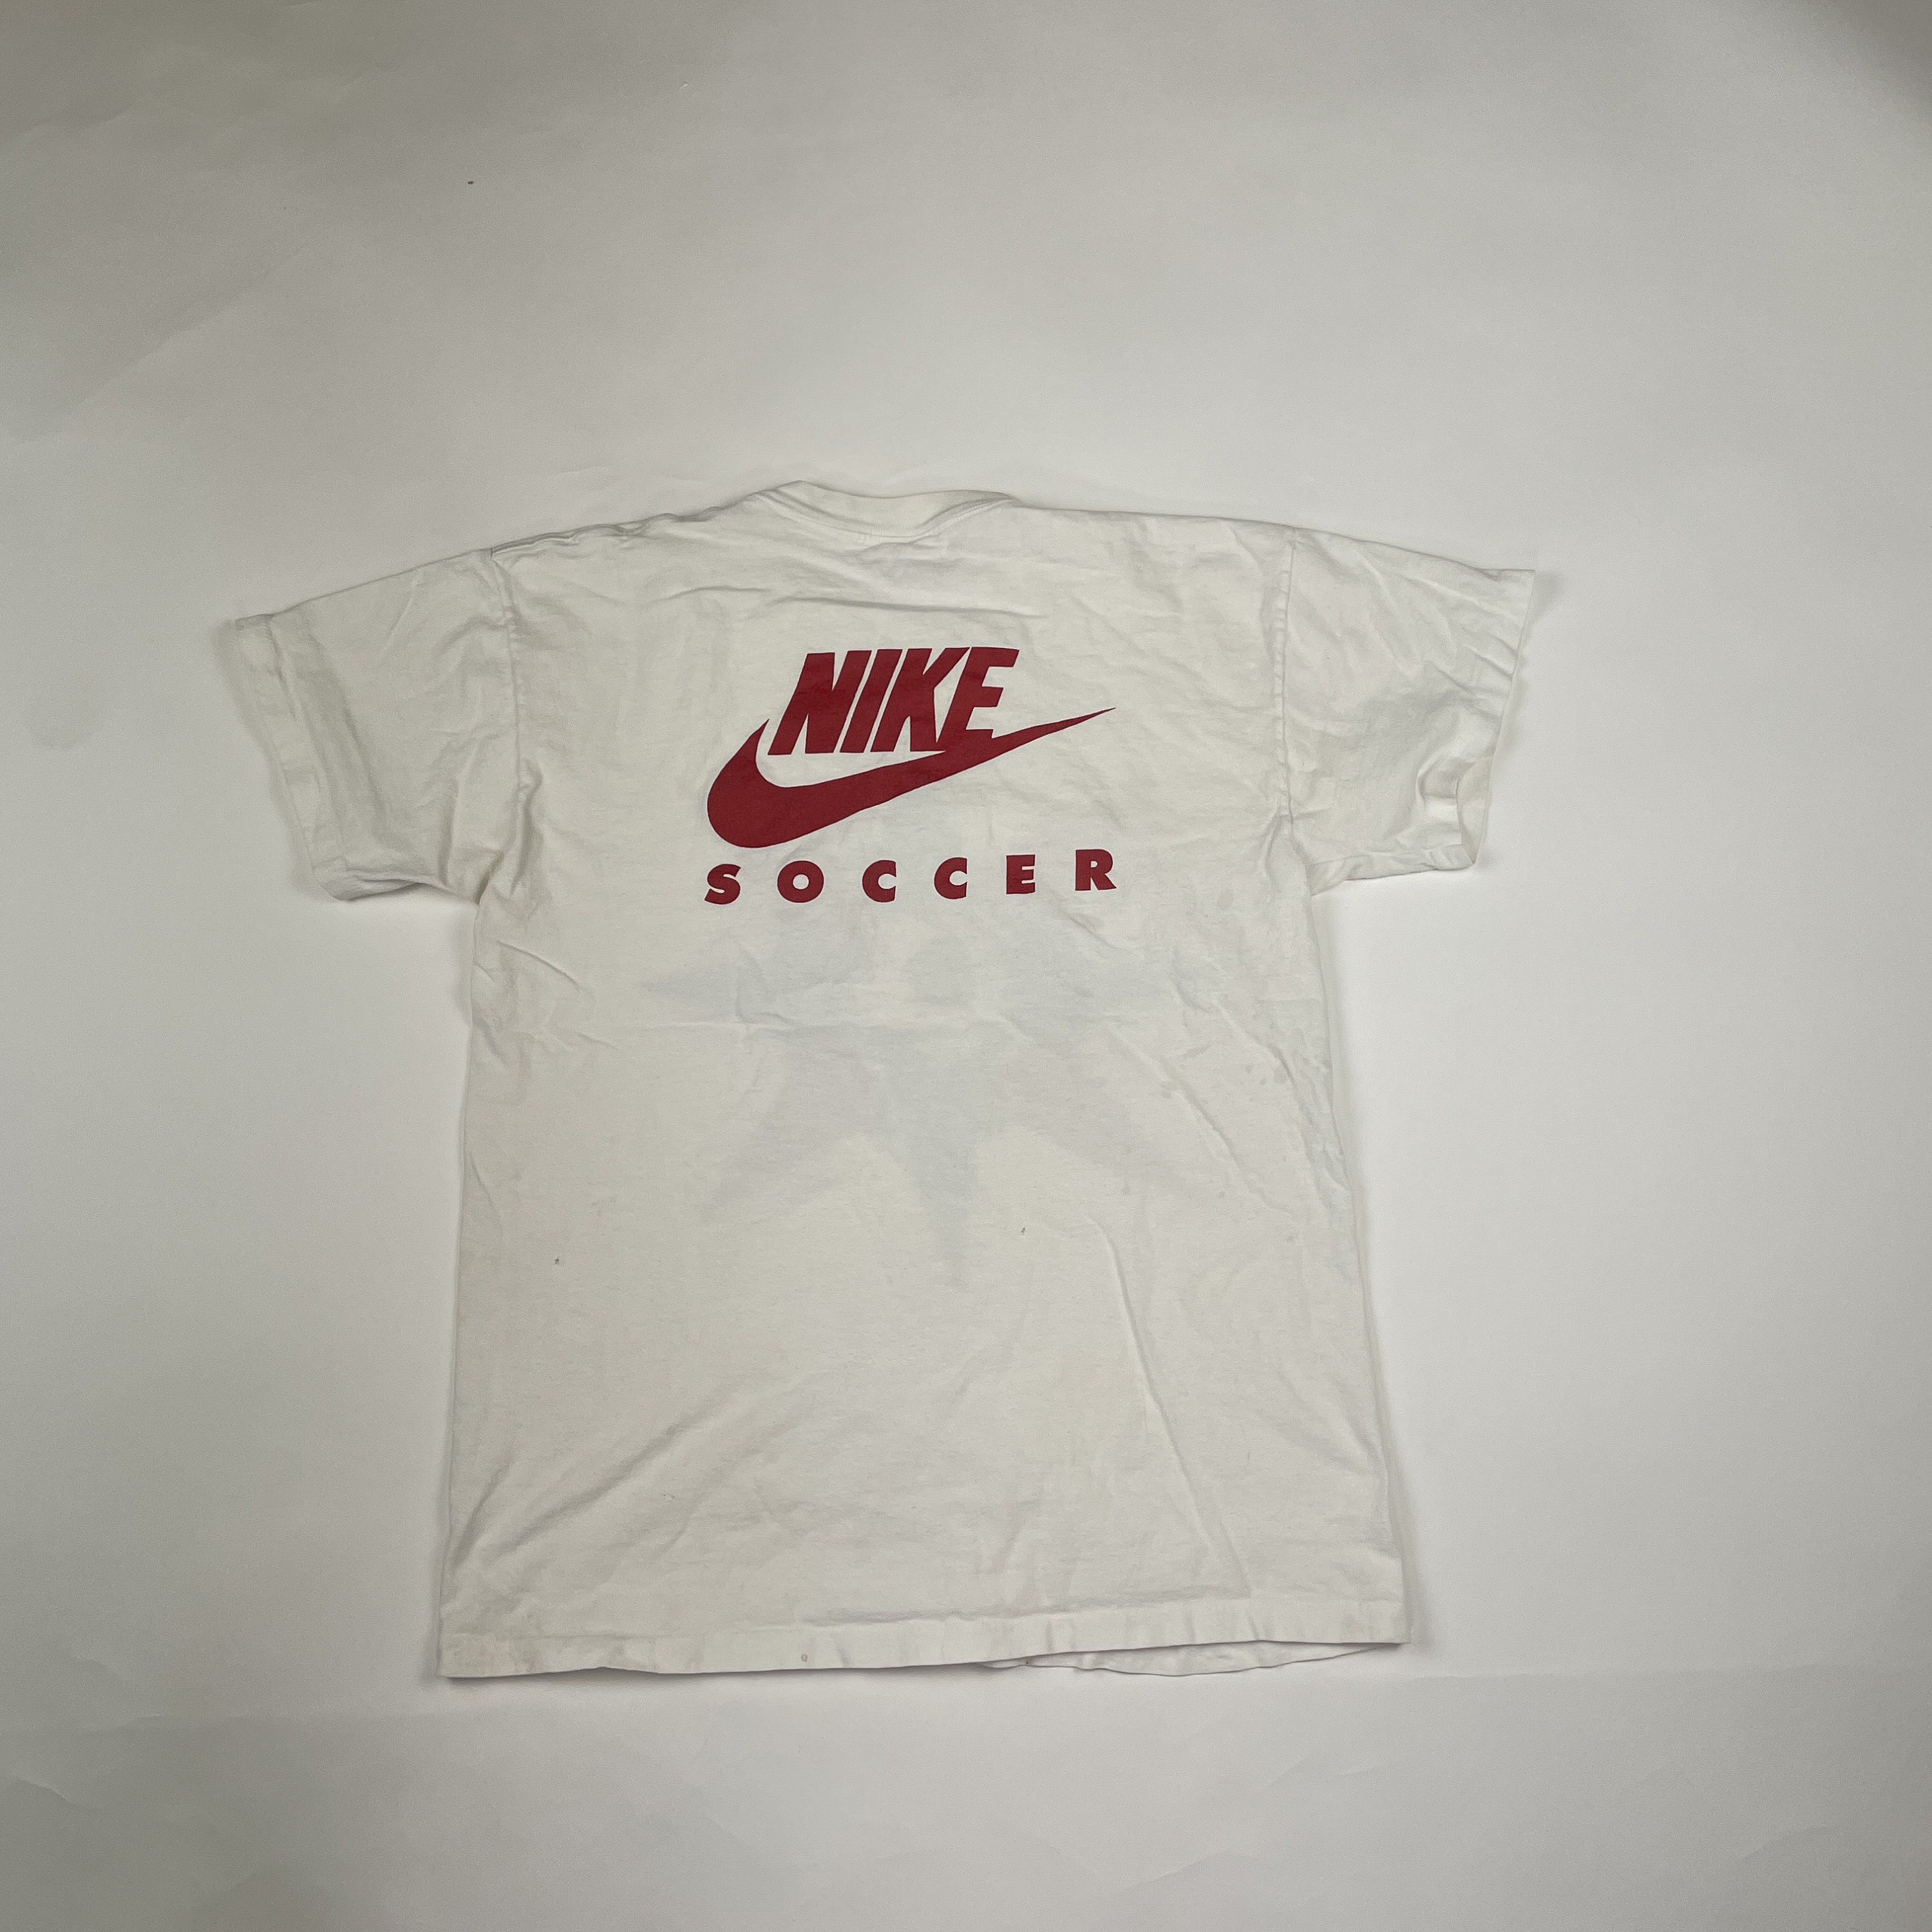 Vintage Nike Soccer - Etsy